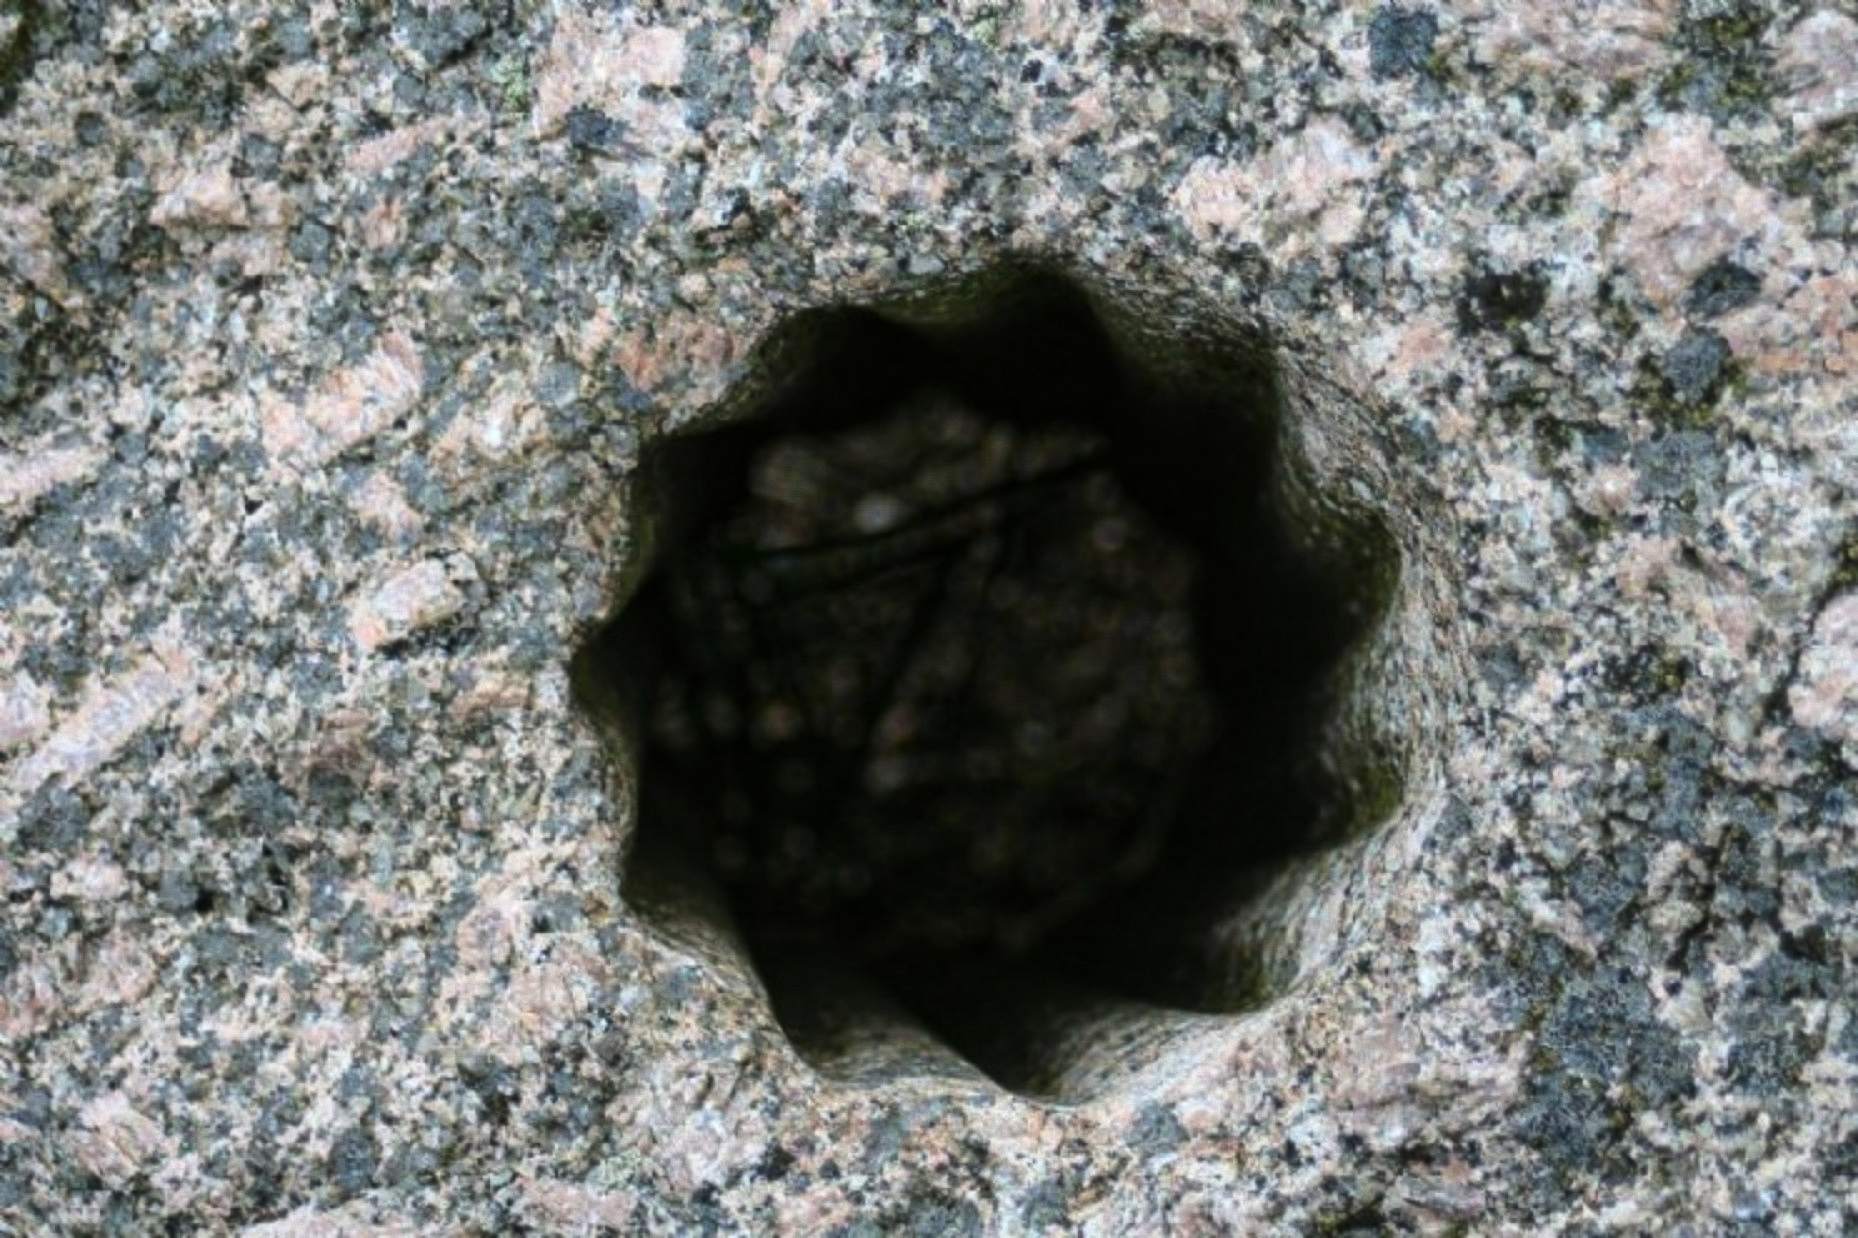 Lubang aneh berbentuk bintang kuno ini ditemukan diukir pada batu keras di Volda, Norwegia – sebuah kota yang pernah menjadi rumah bagi banyak pemukim Norse dan saat ini terdaftar sebagai salah satu situs terpenting bagi para arkeolog di negara tersebut.